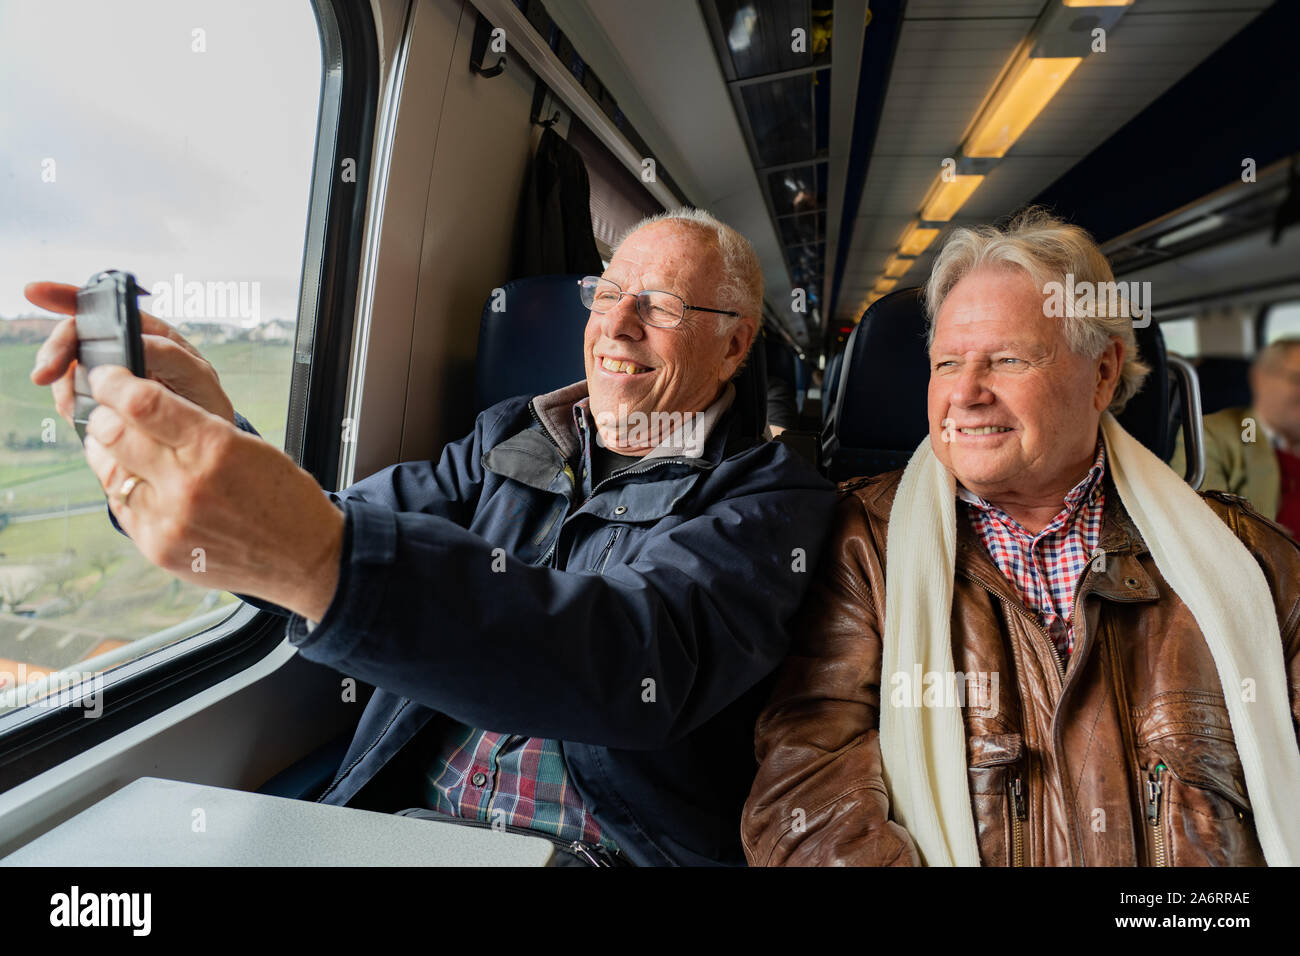 Ältere Menschen mit einem guten Freund in Freizeitkleidung ist ein Selbstportrait mit einem smart phone in Zug in der Schweiz bei Tageslicht. Stockfoto